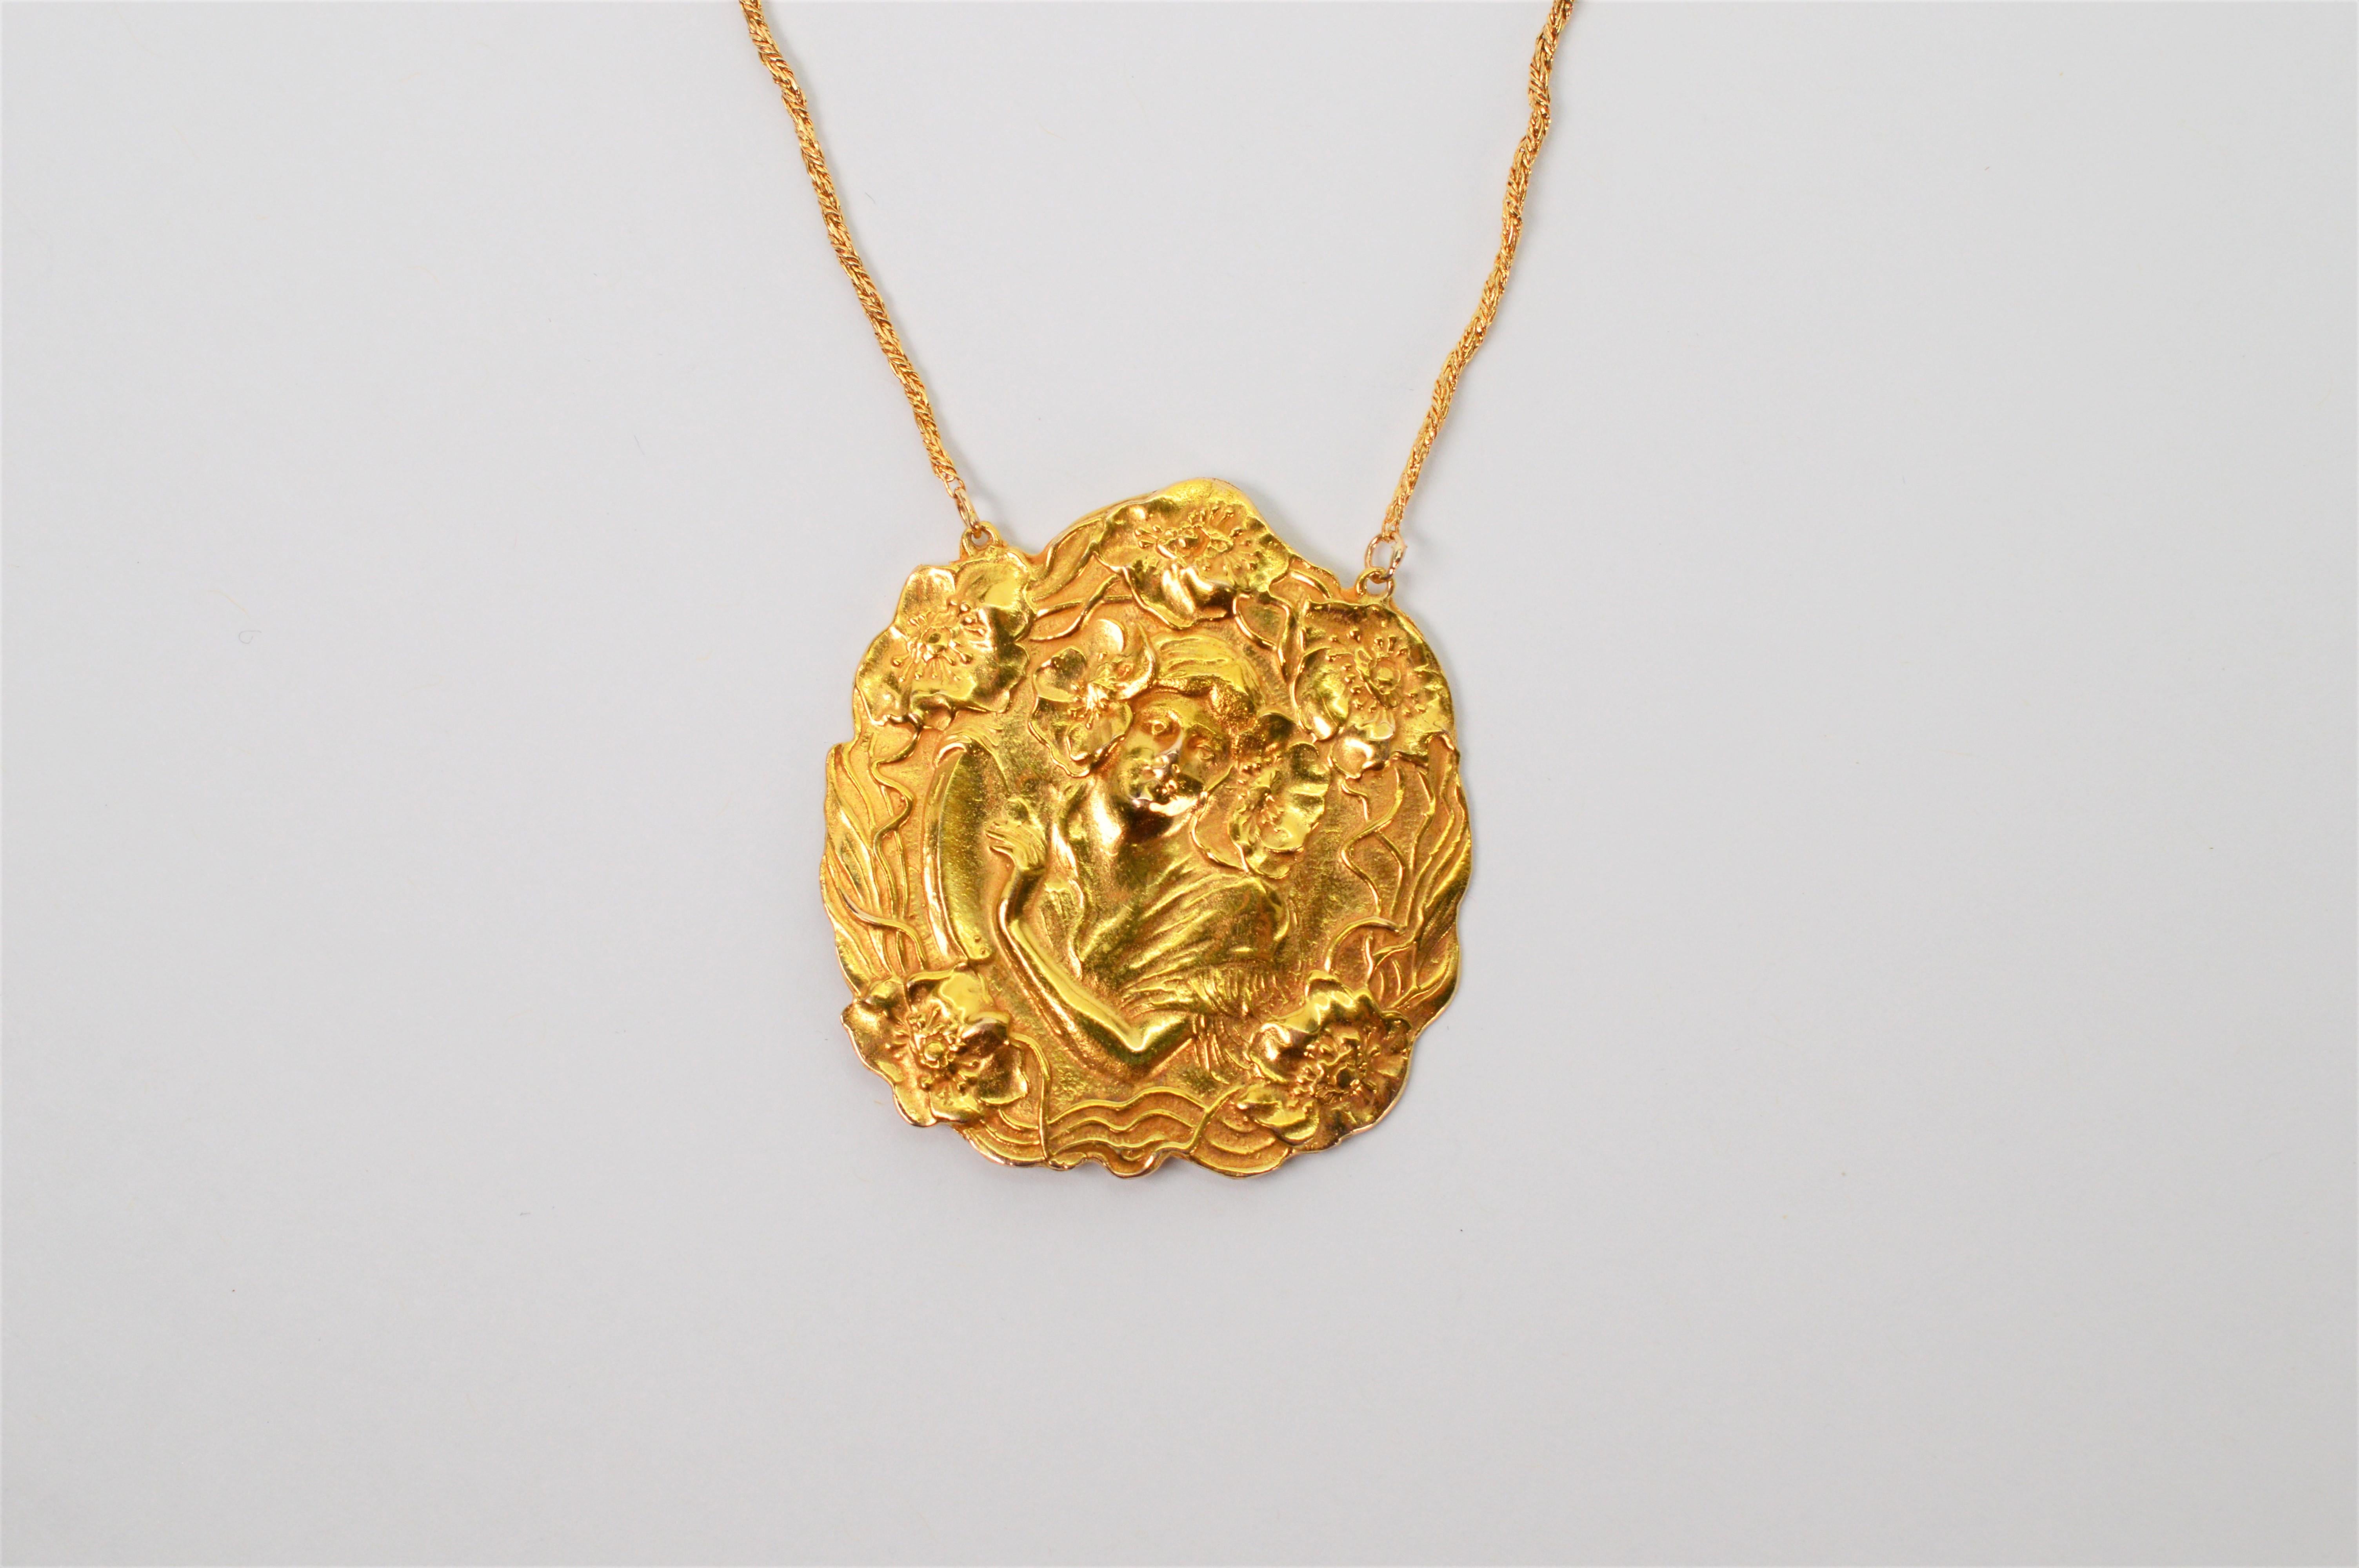 Women's Art Nouveau Style 14 Karat Yellow Gold Pendant Necklace For Sale